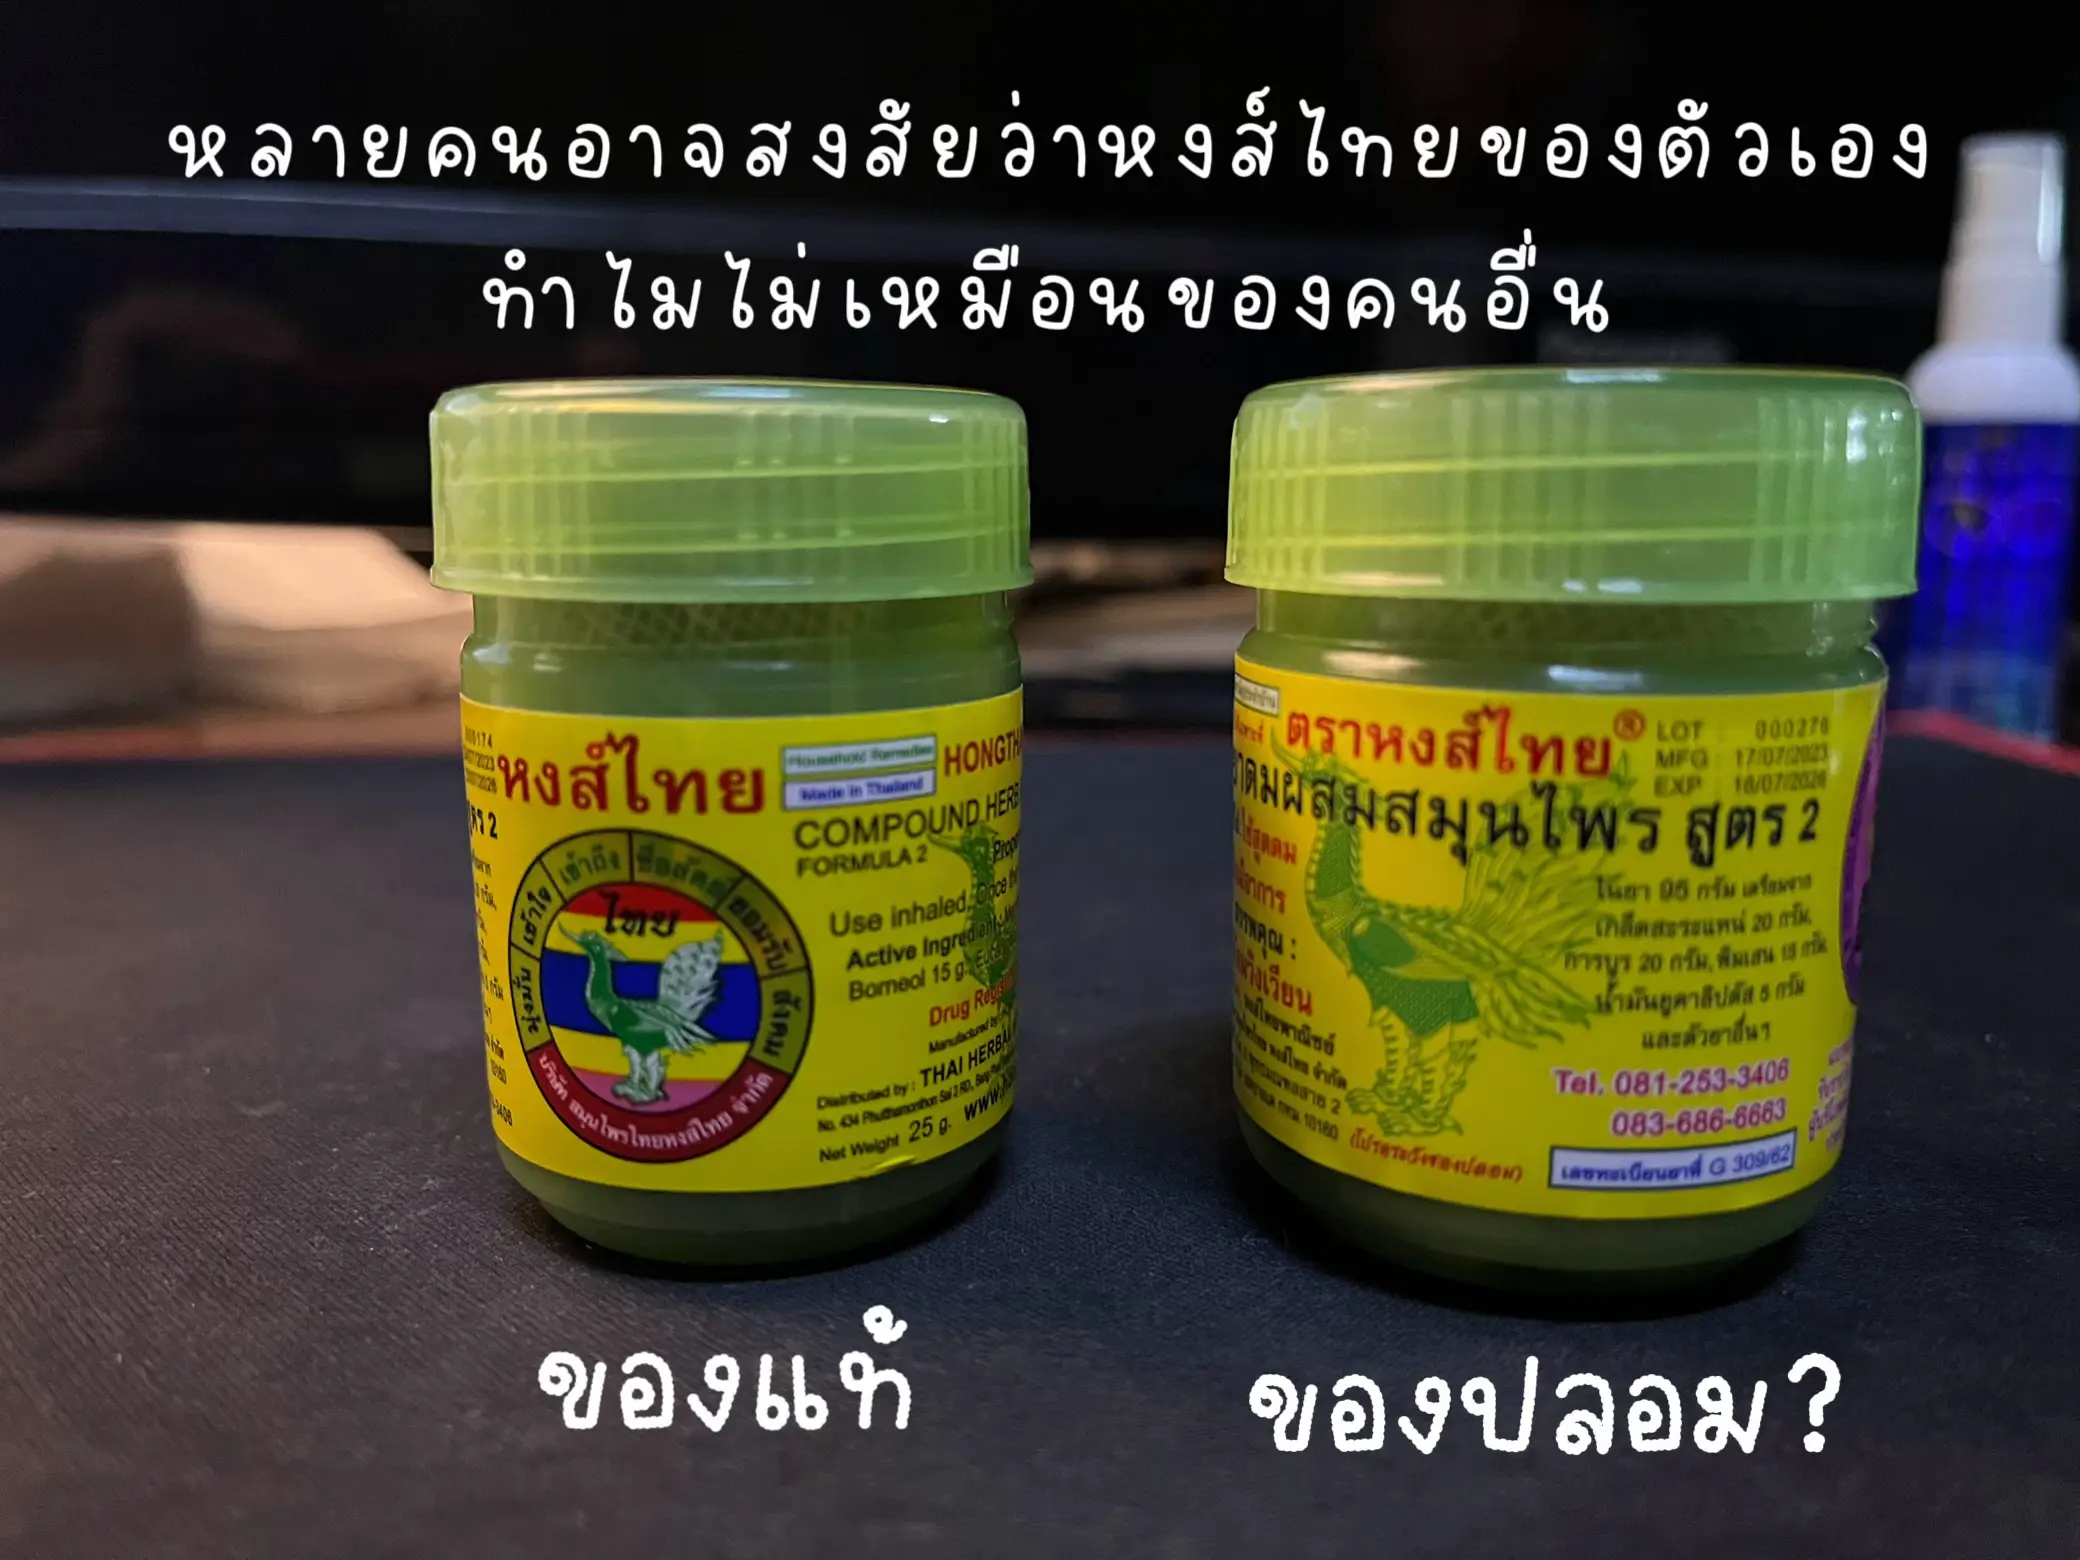 รูปภาพของ ยาดมหงส์ไทย ของแท้ vs ของปลอม ต่างกันตรงไหน‼️ (1)